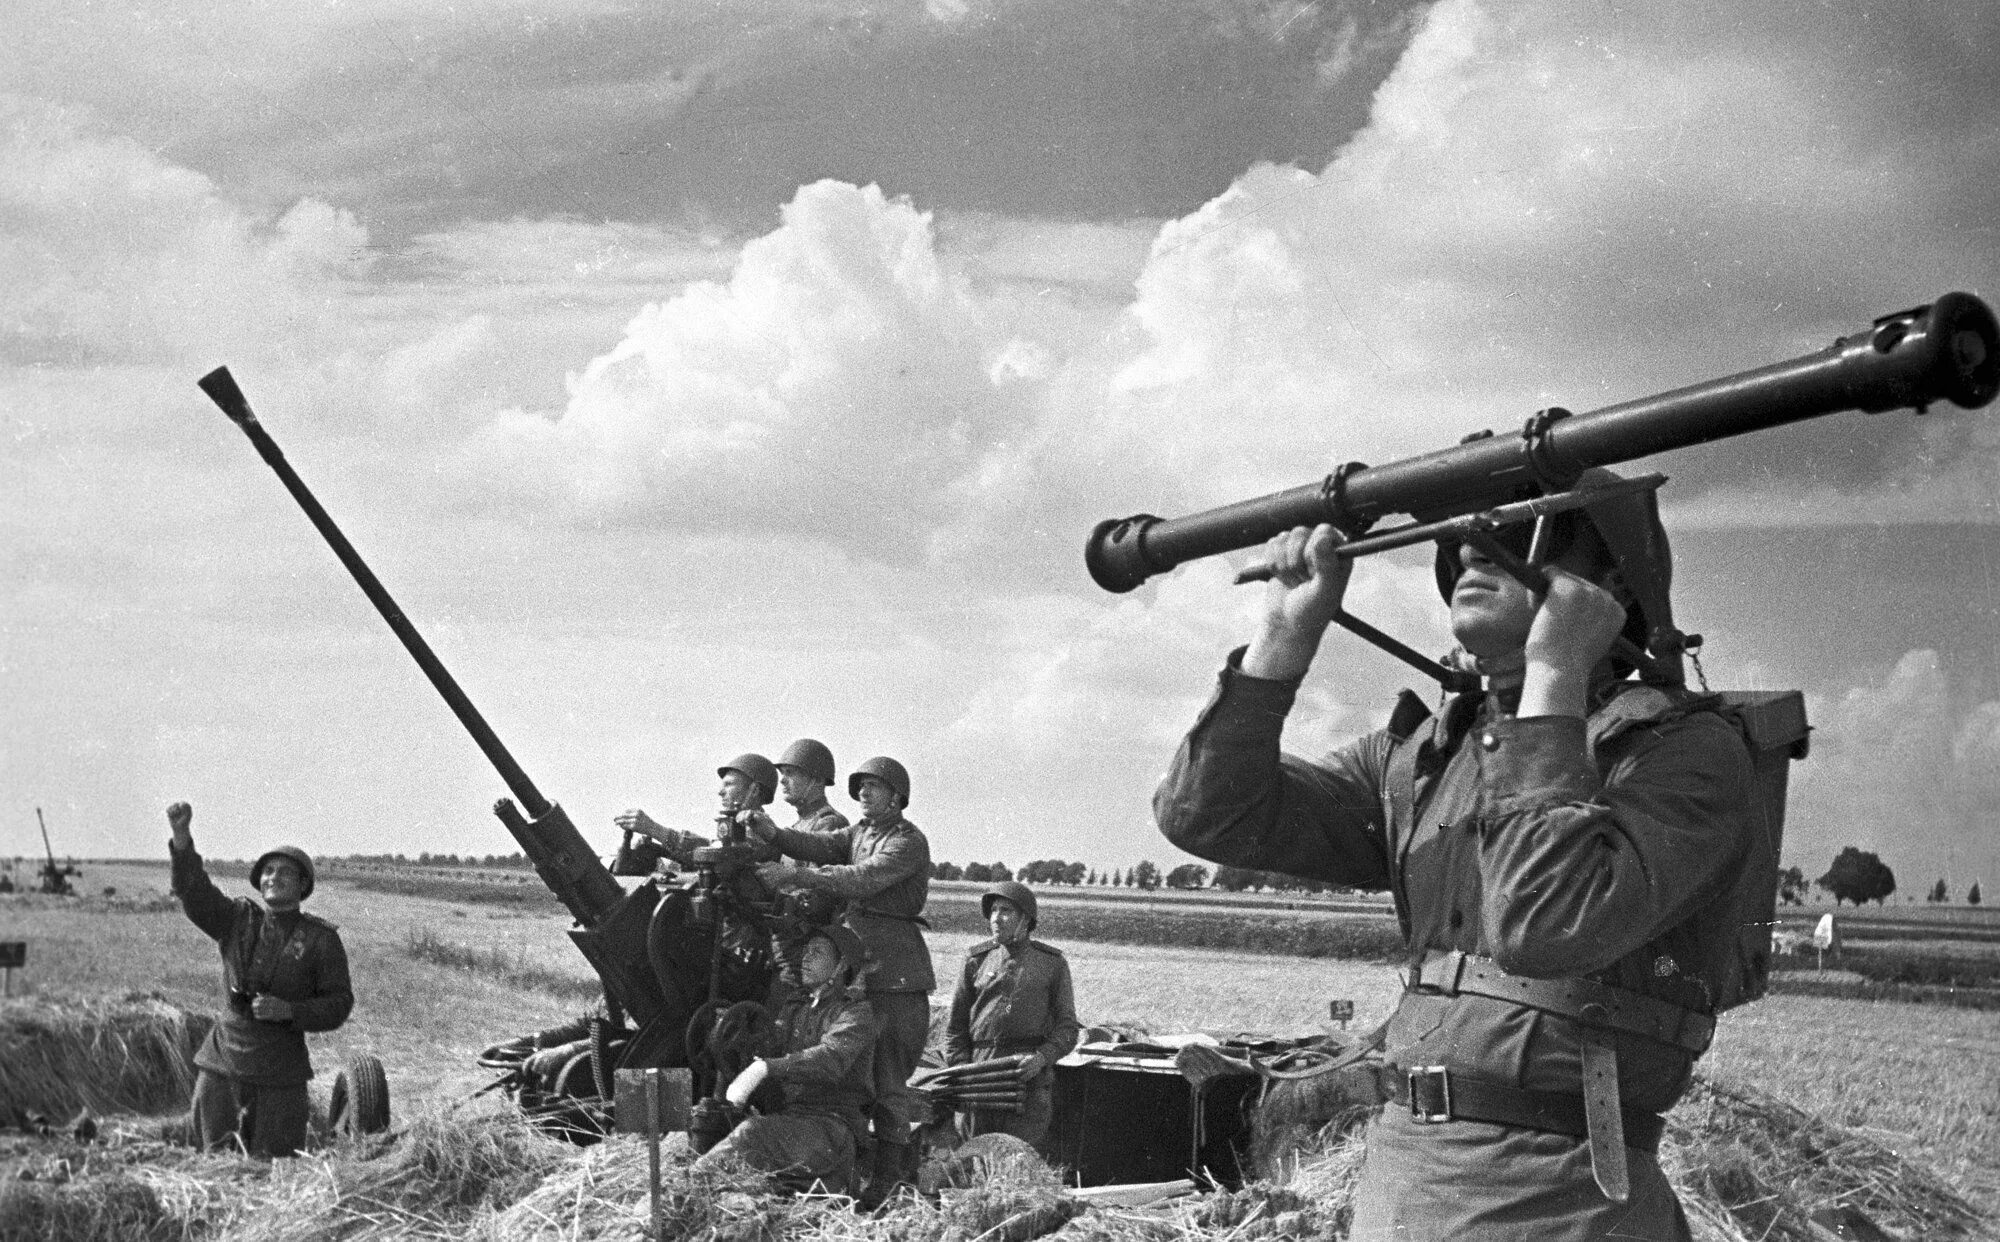 Зенитная пушка 37 мм ВОВ. Зенитчики РККА В 1941 году. 37-Мм зенитная пушка в годы ВОВ. Зенитная батарея 1941-1945. Вопрос во время великой отечественной войны